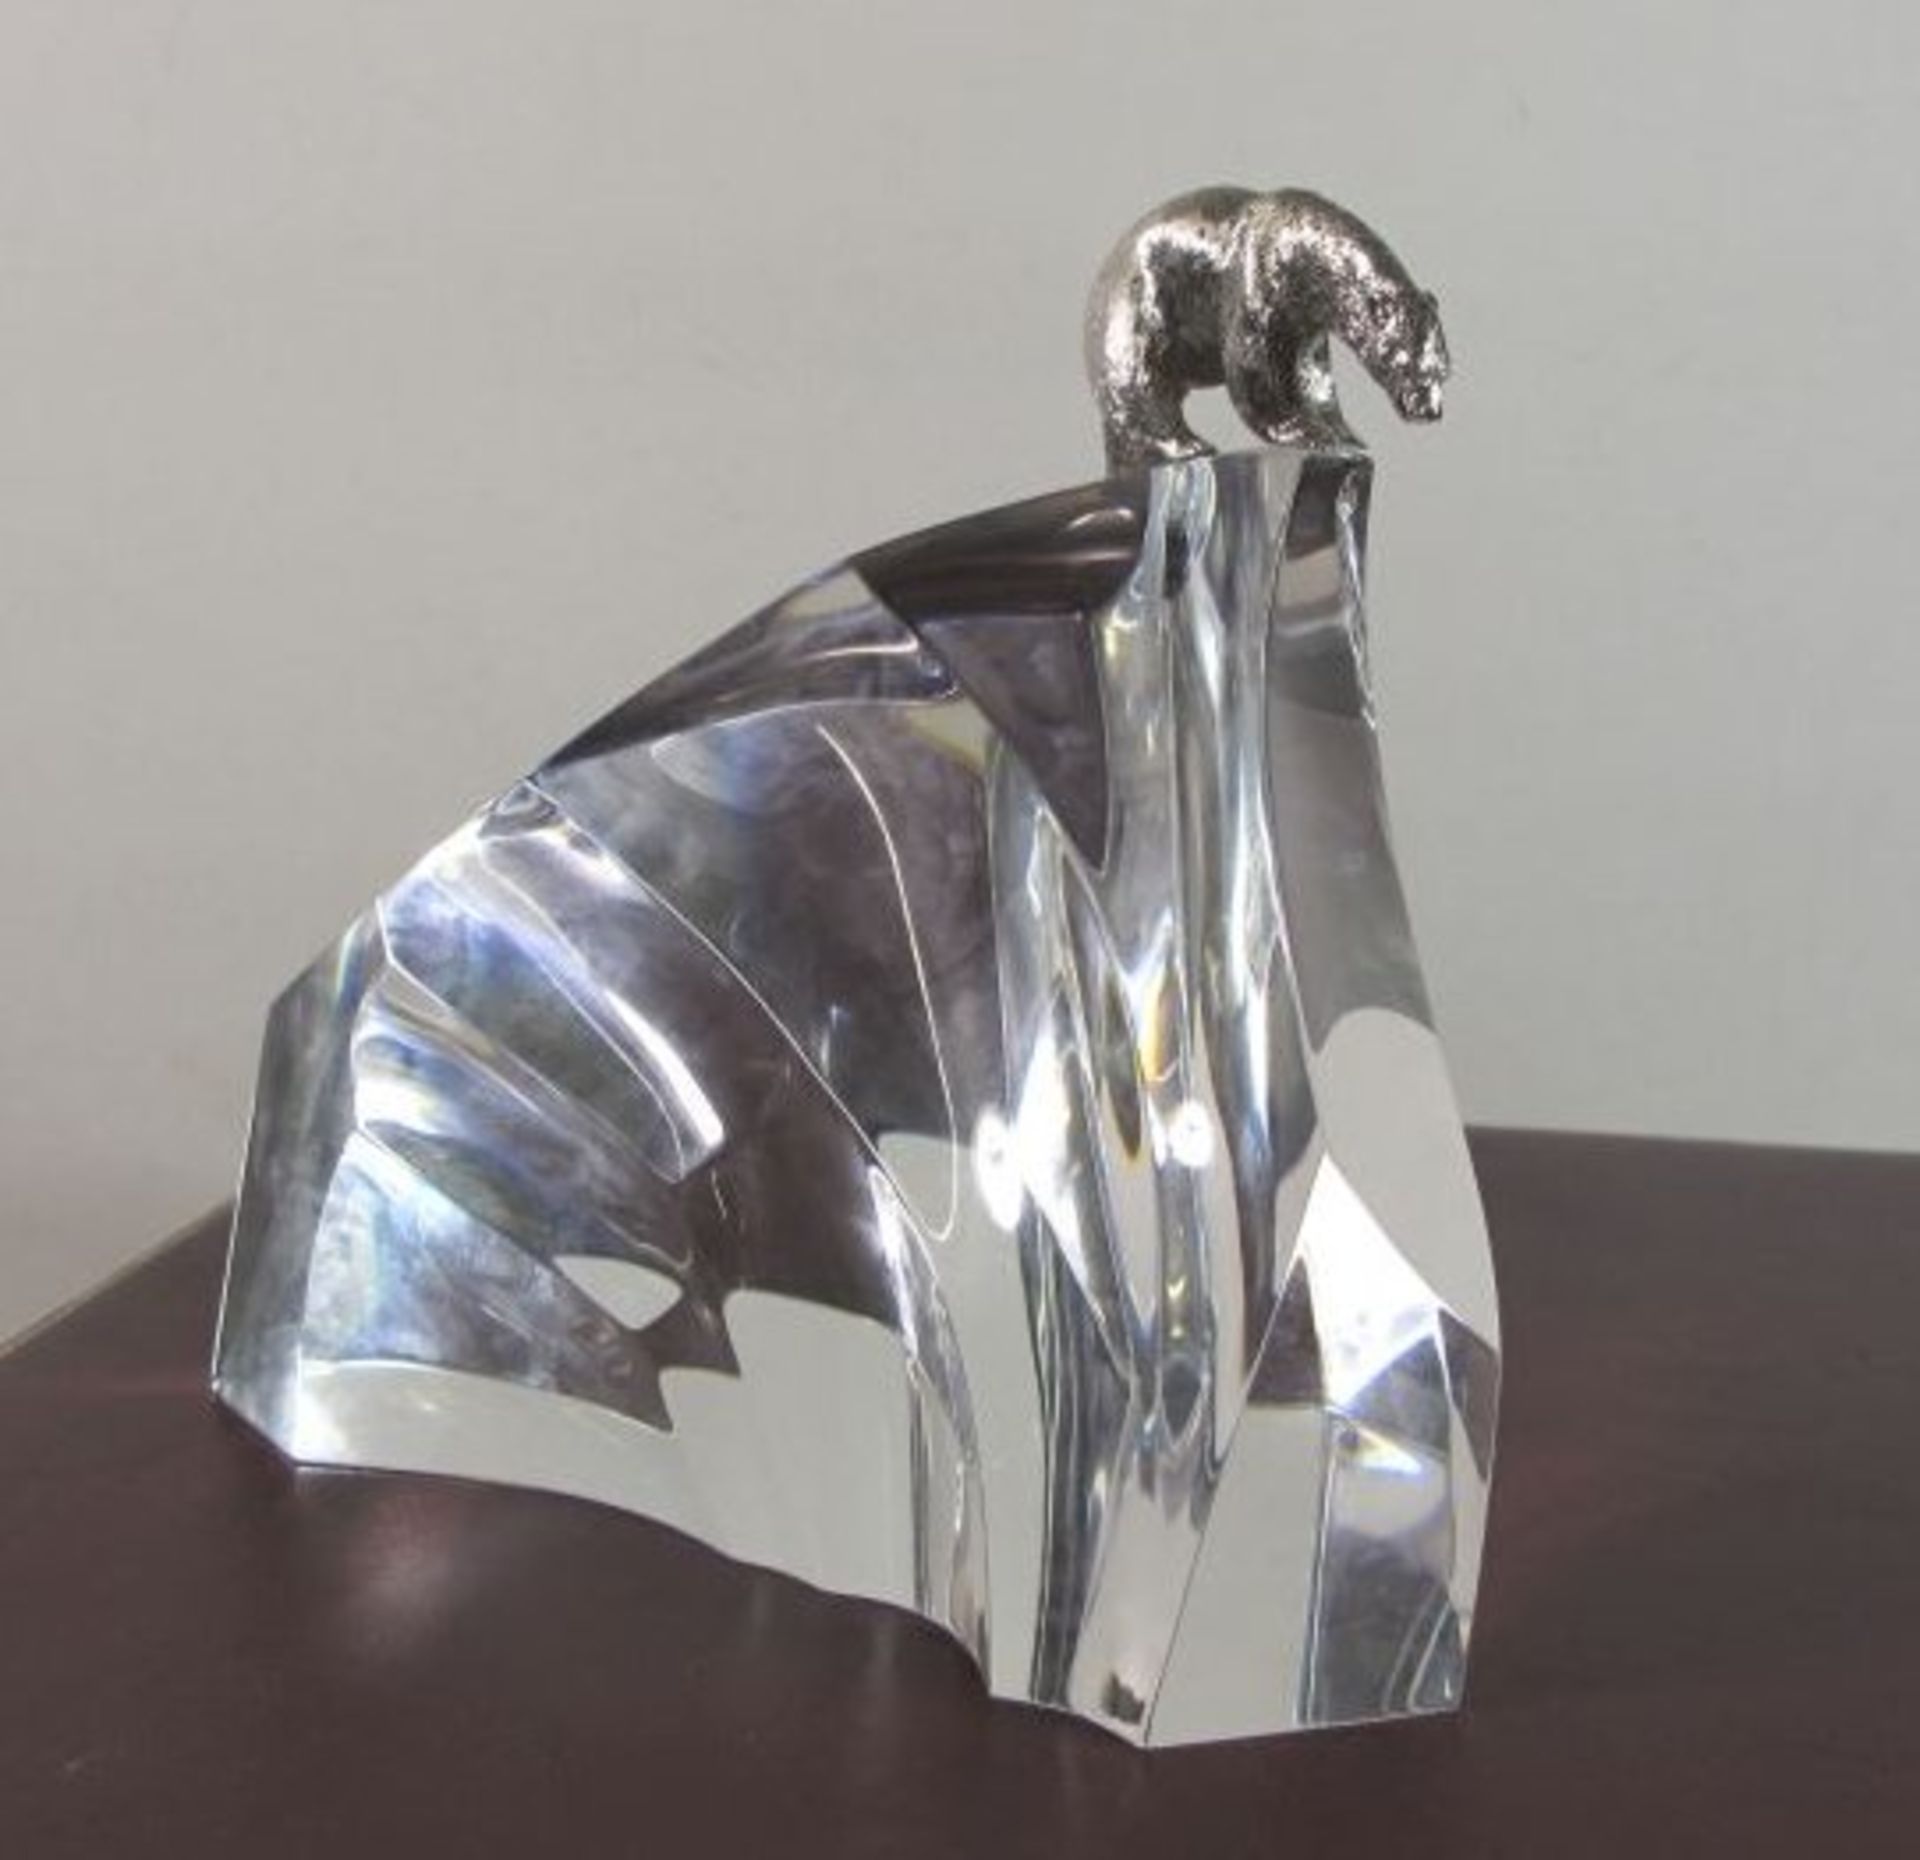 Steuben Glas-Skulptur "Ice Bear", Modell #1022, ca. 1970, von James Houston, Bär aus Silber, H-12,